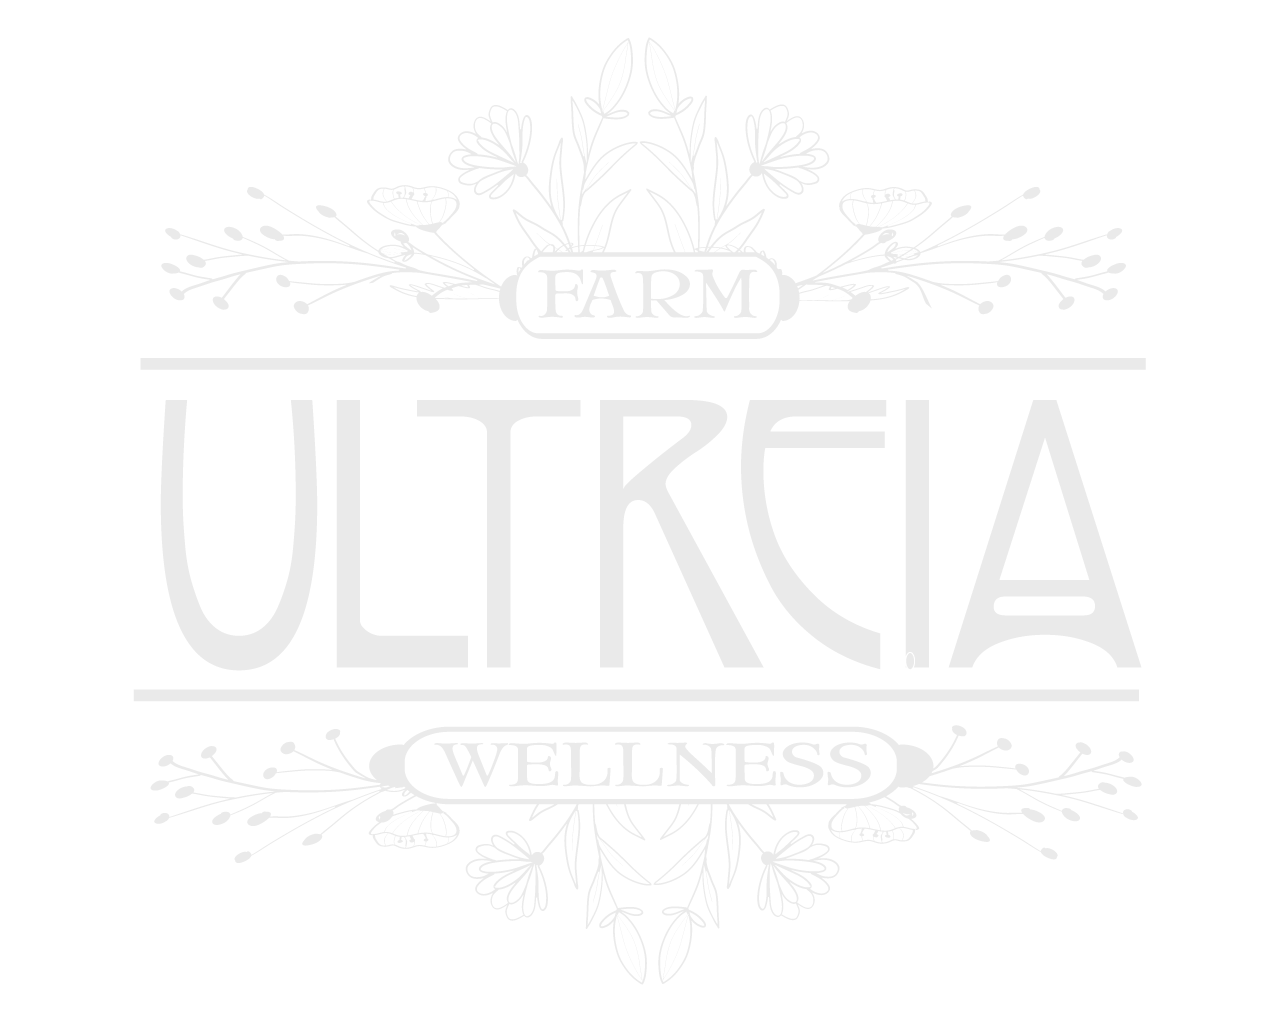 Ultreia Farm and Wellness